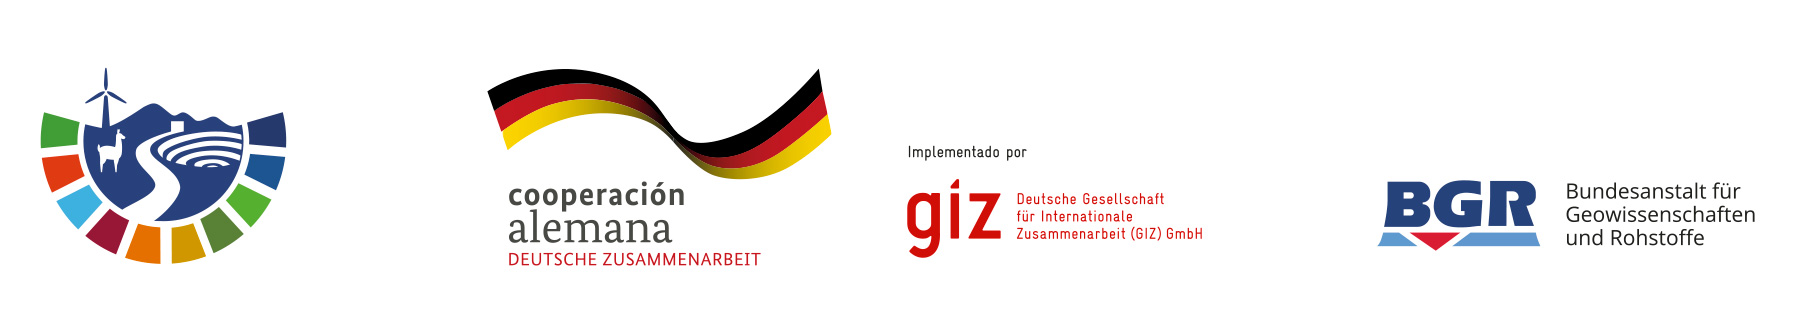 MINSUS es un proyecto de la Cooperación Alemana con la Comisión Económica para América Latina y el Caribe (CEPAL), que busca promover la cooperación regional para una gestión responsable de los recursos mineros en los países andinos.